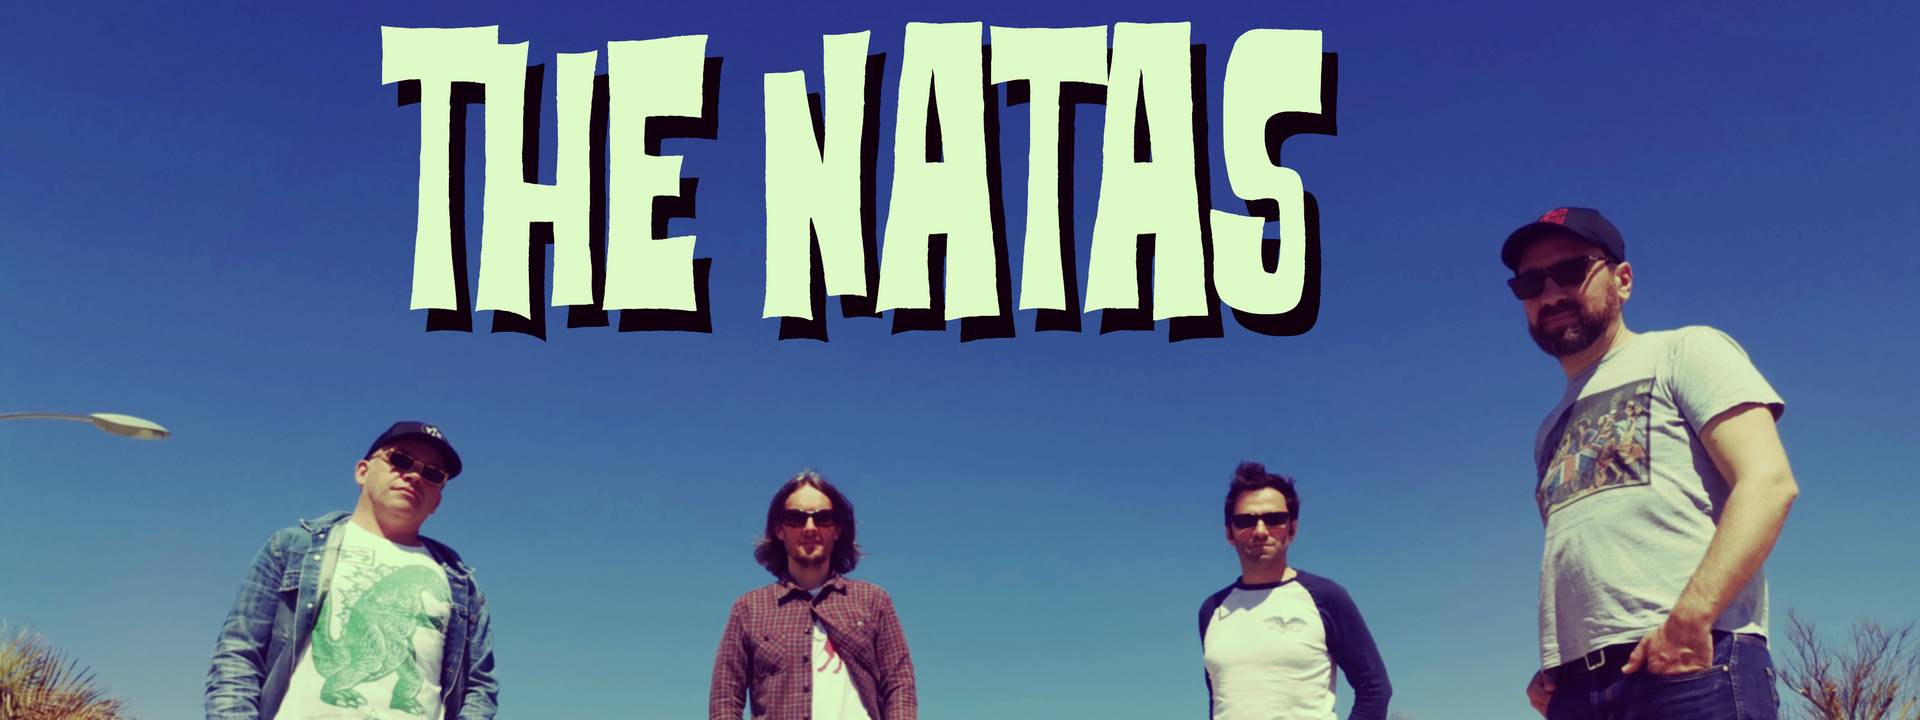 The Natas